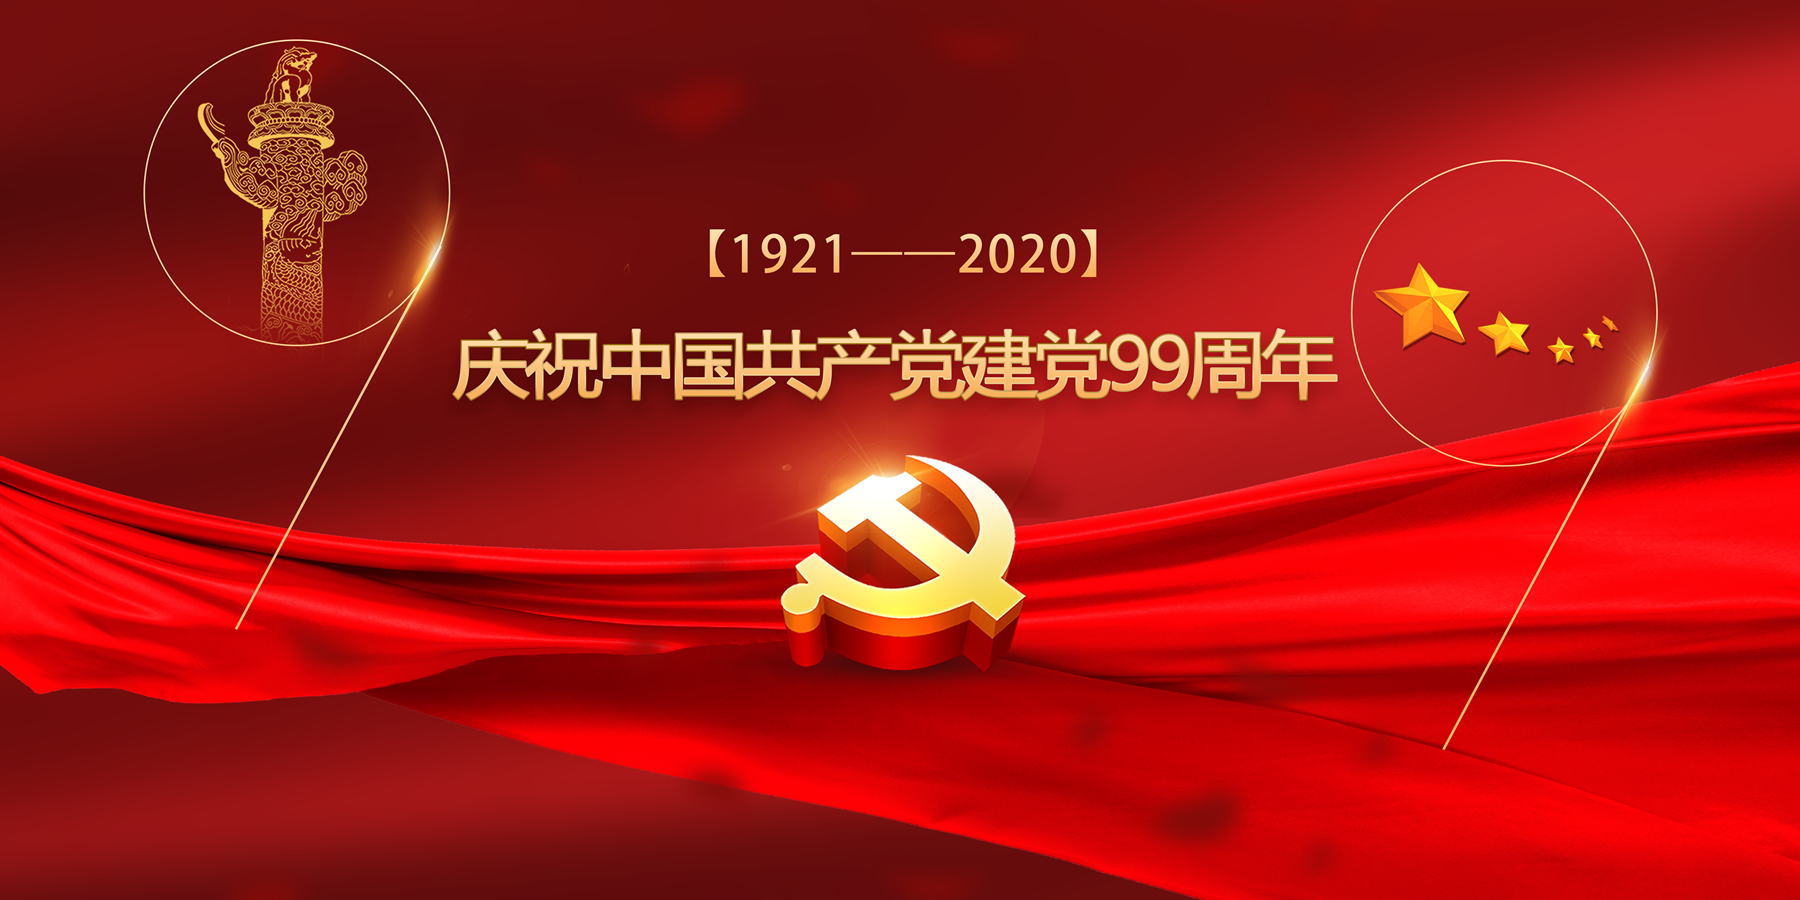 庆祝中国共产党建党99周年(1921-2020)